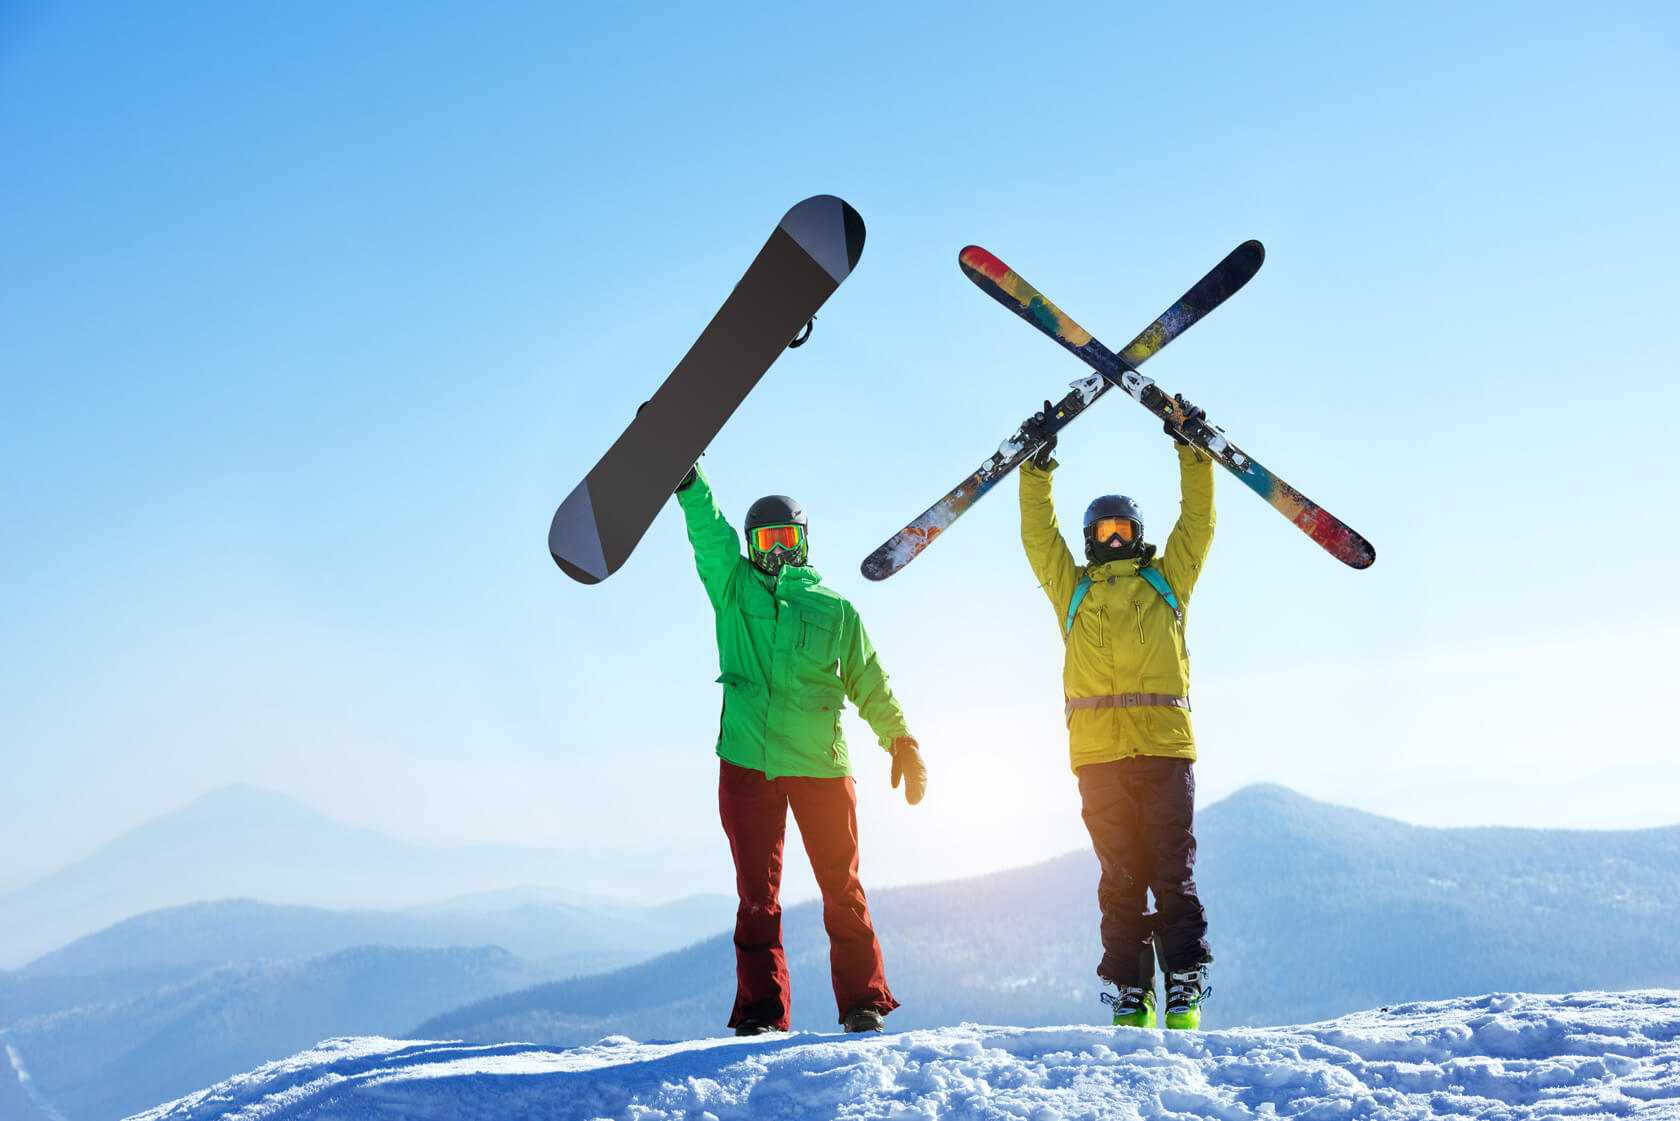 Лыжи и сноуборд для красивой фигуры Сравнение двух традиционных зимних развлечений: сноубординга и катания на лыжах от журнала о фитнесе и здоровье на портал